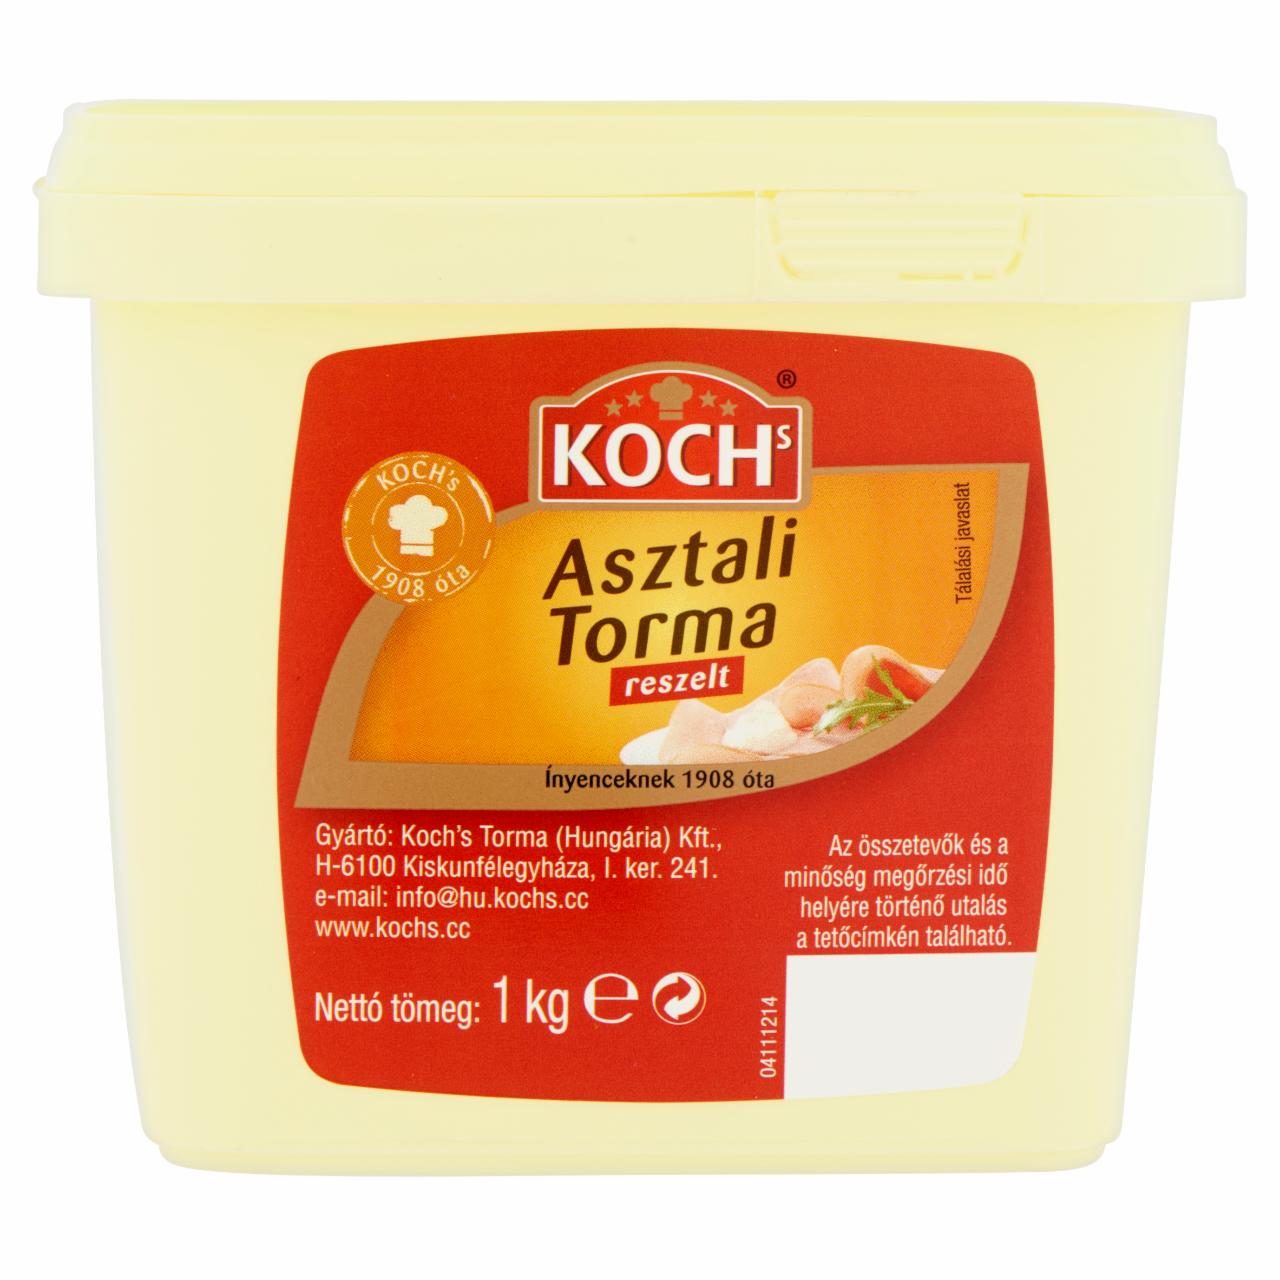 Képek - Koch's reszelt asztali torma 1 kg